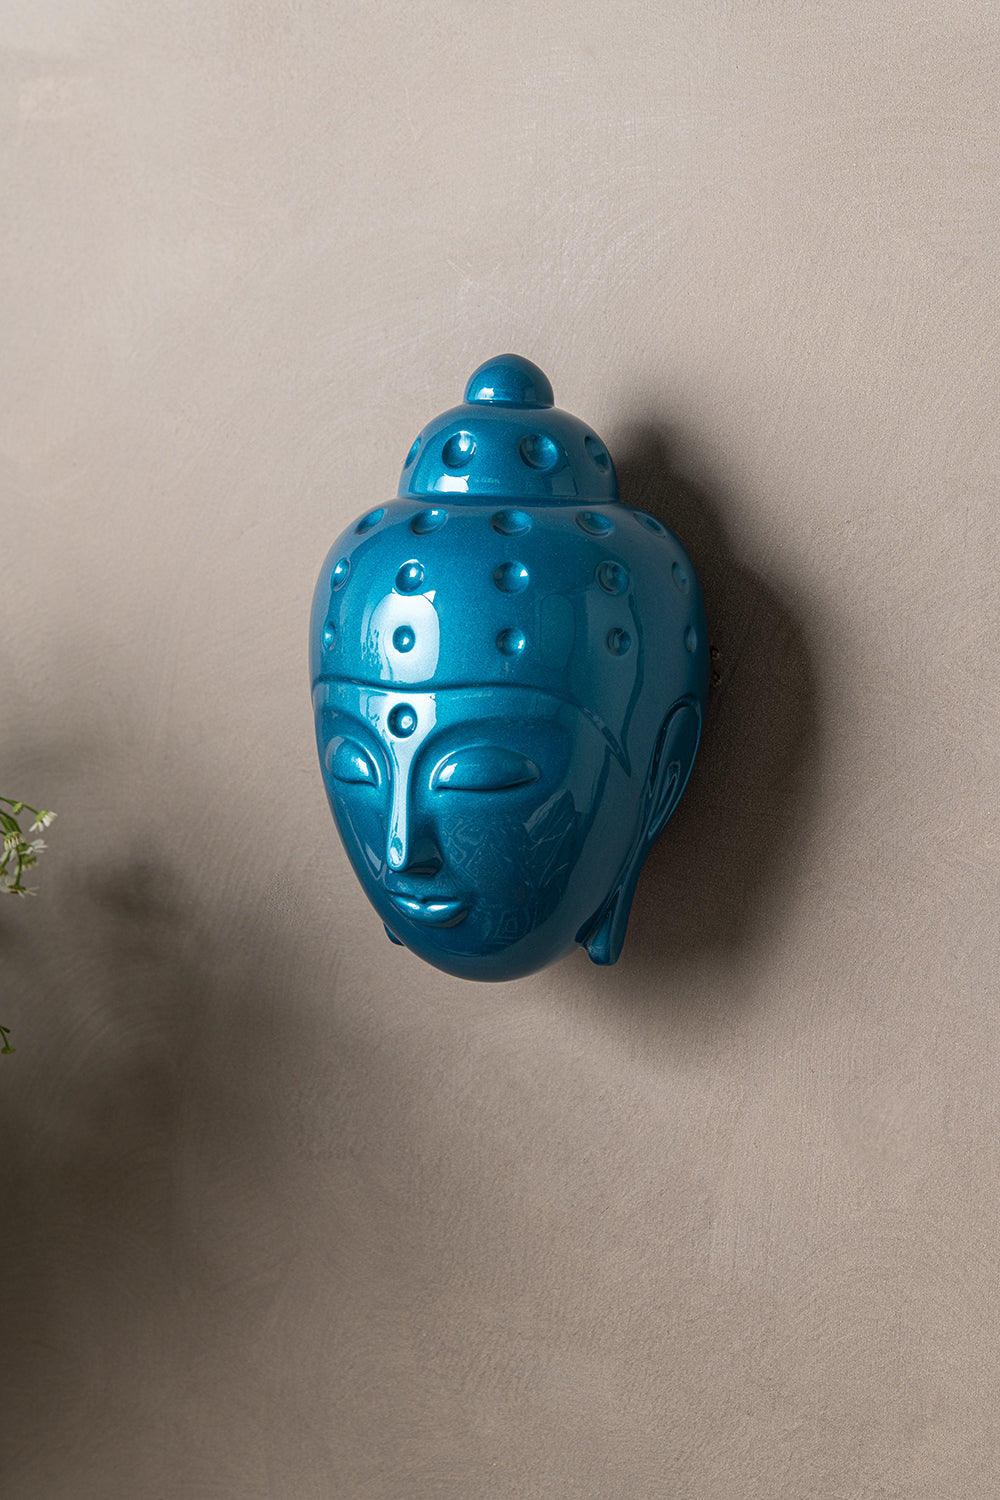 Ceramic Buddha Head Sculpture - Metalic Turquoise